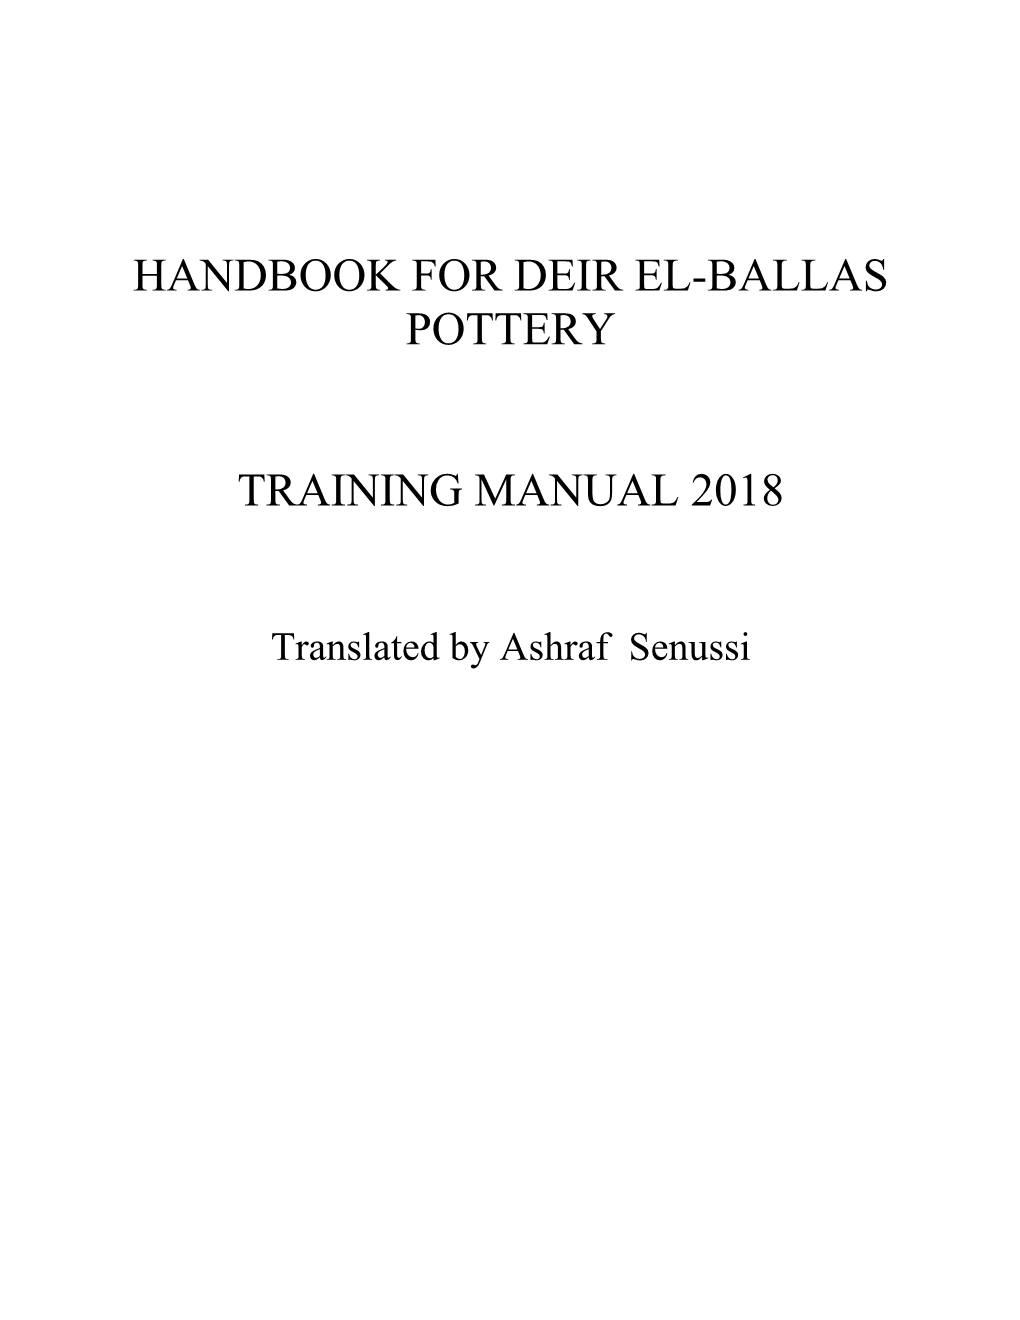 Handbook for Deir El-Ballas Pottery Training Manual 2018